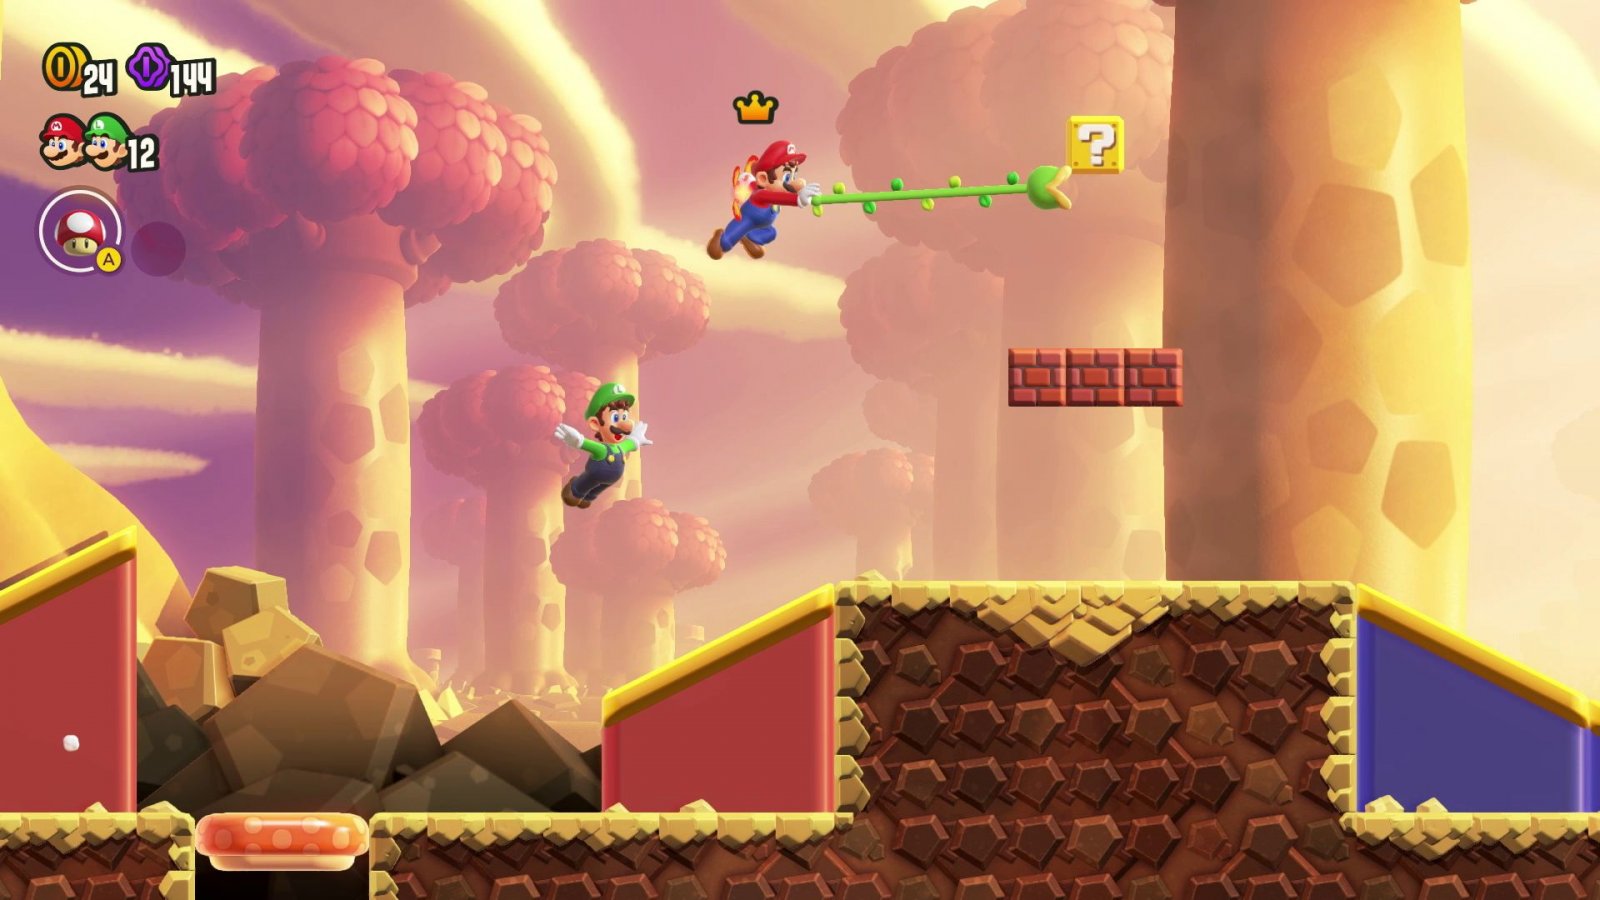 Classifica eShop, Super Mario Bros. Wonder è il più venduto su Nintendo Switch